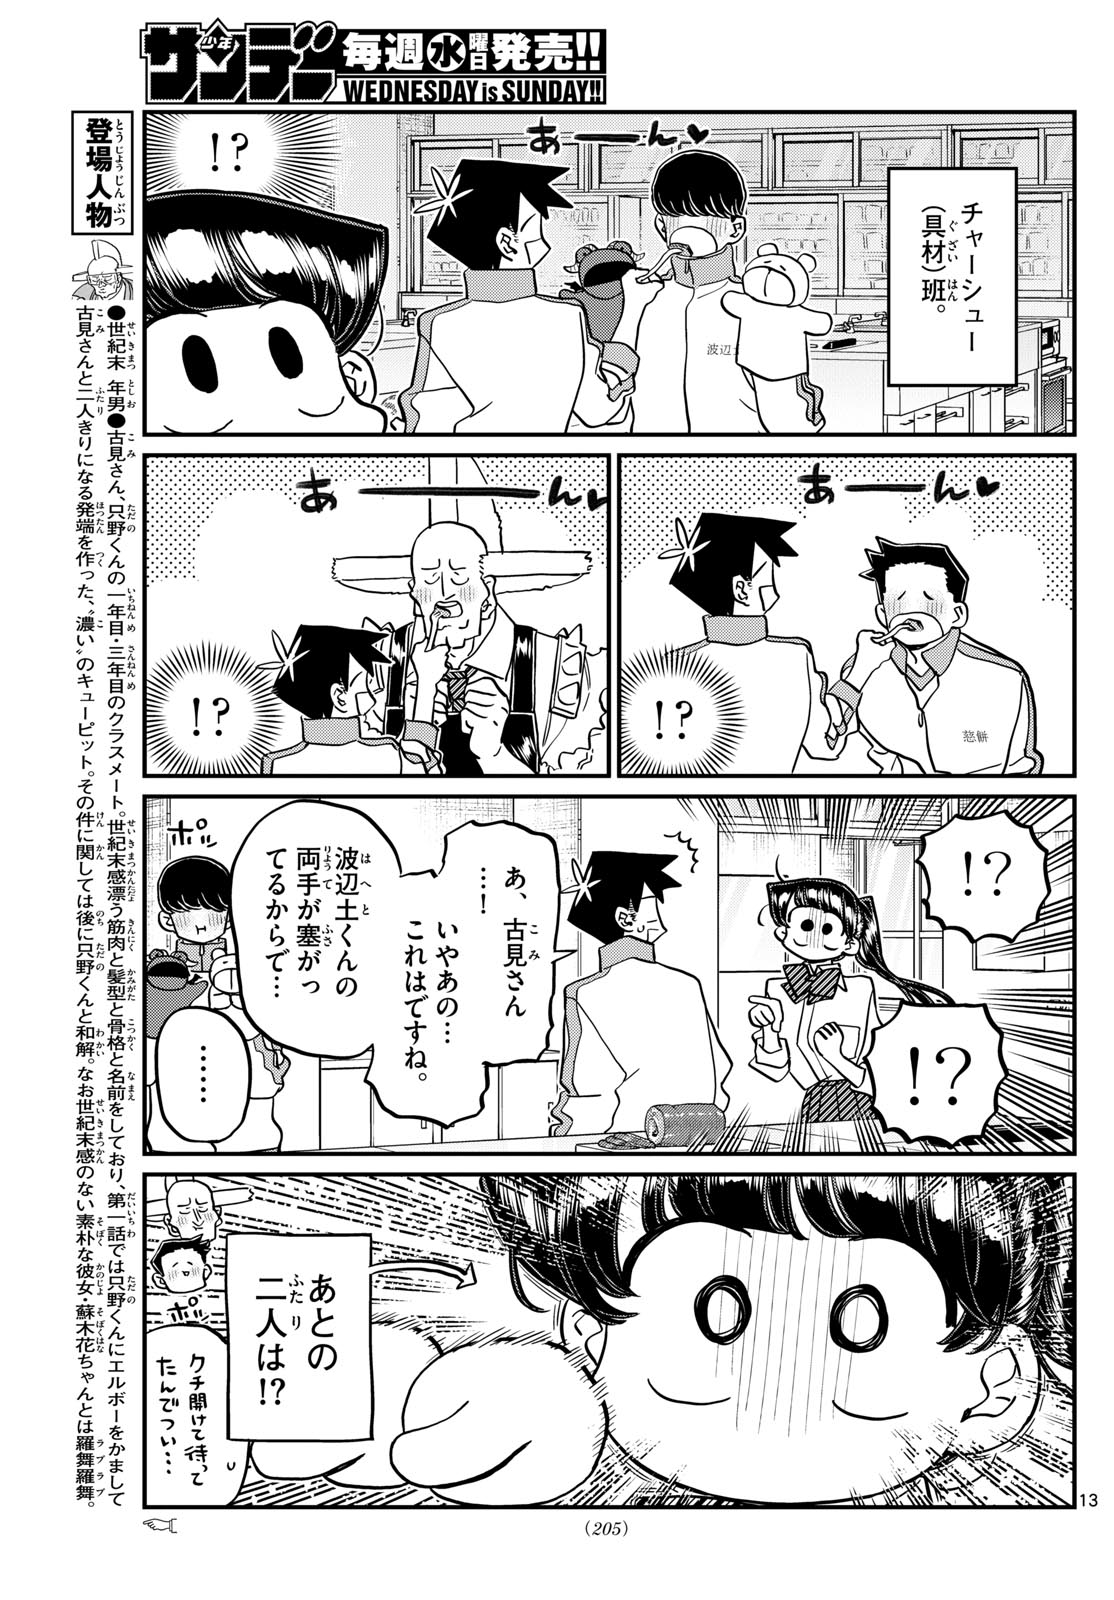 Komi-san wa Komyushou Desu - Chapter 448 - Page 13